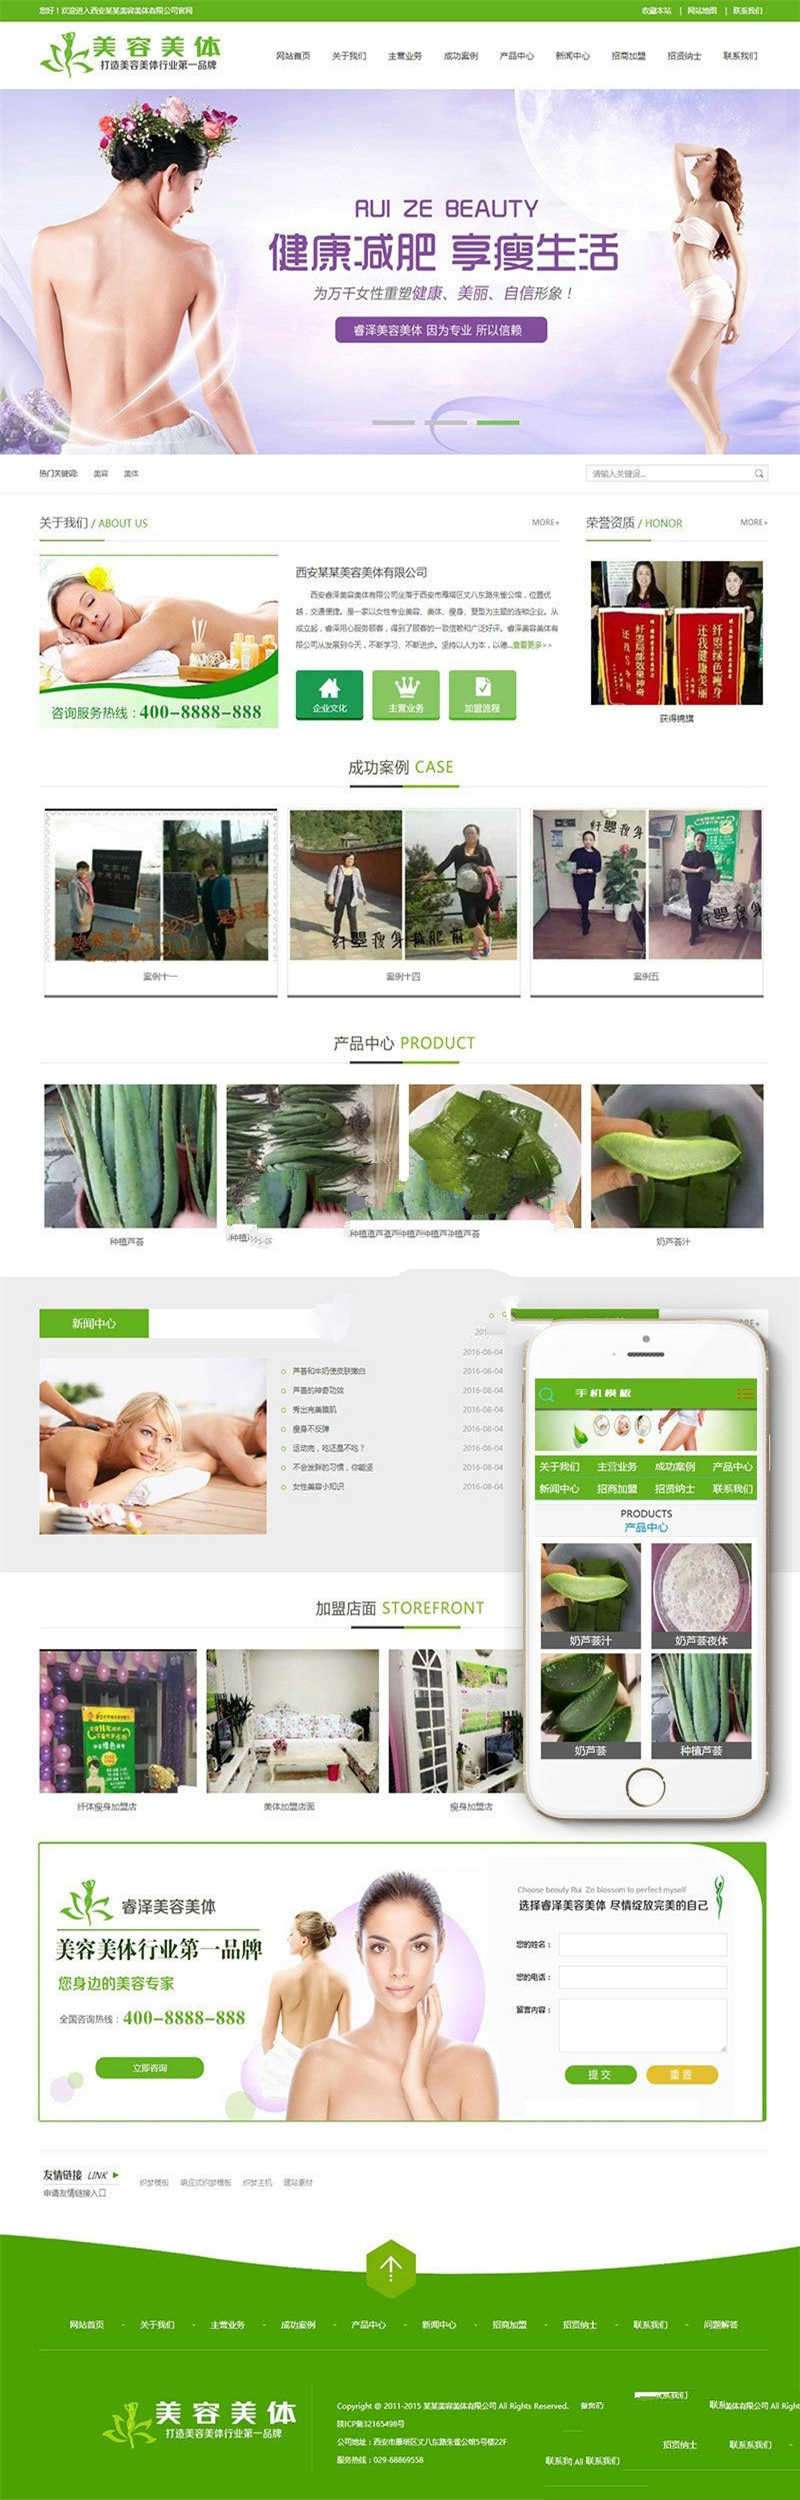 [企业源码]织梦dedecms绿色健身瑜伽美容美体企业网站模板(带手机移动端)插图